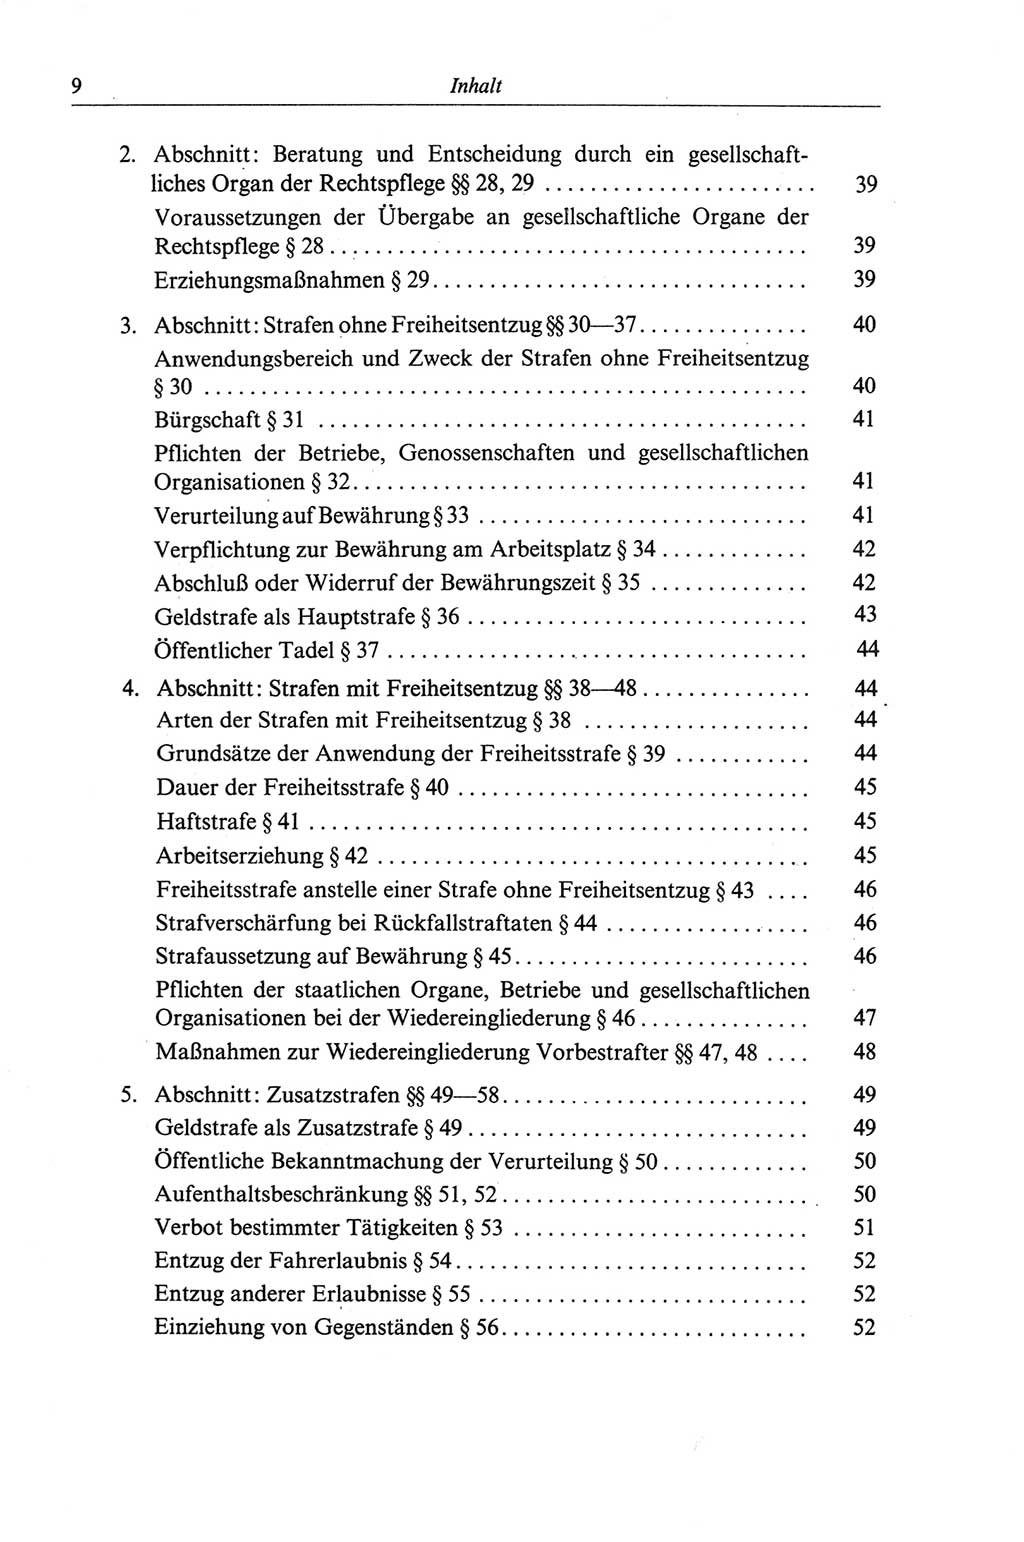 Strafgesetzbuch (StGB) der Deutschen Demokratischen Republik (DDR) und angrenzende Gesetze und Bestimmungen 1968, Seite 9 (StGB Ges. Best. DDR 1968, S. 9)